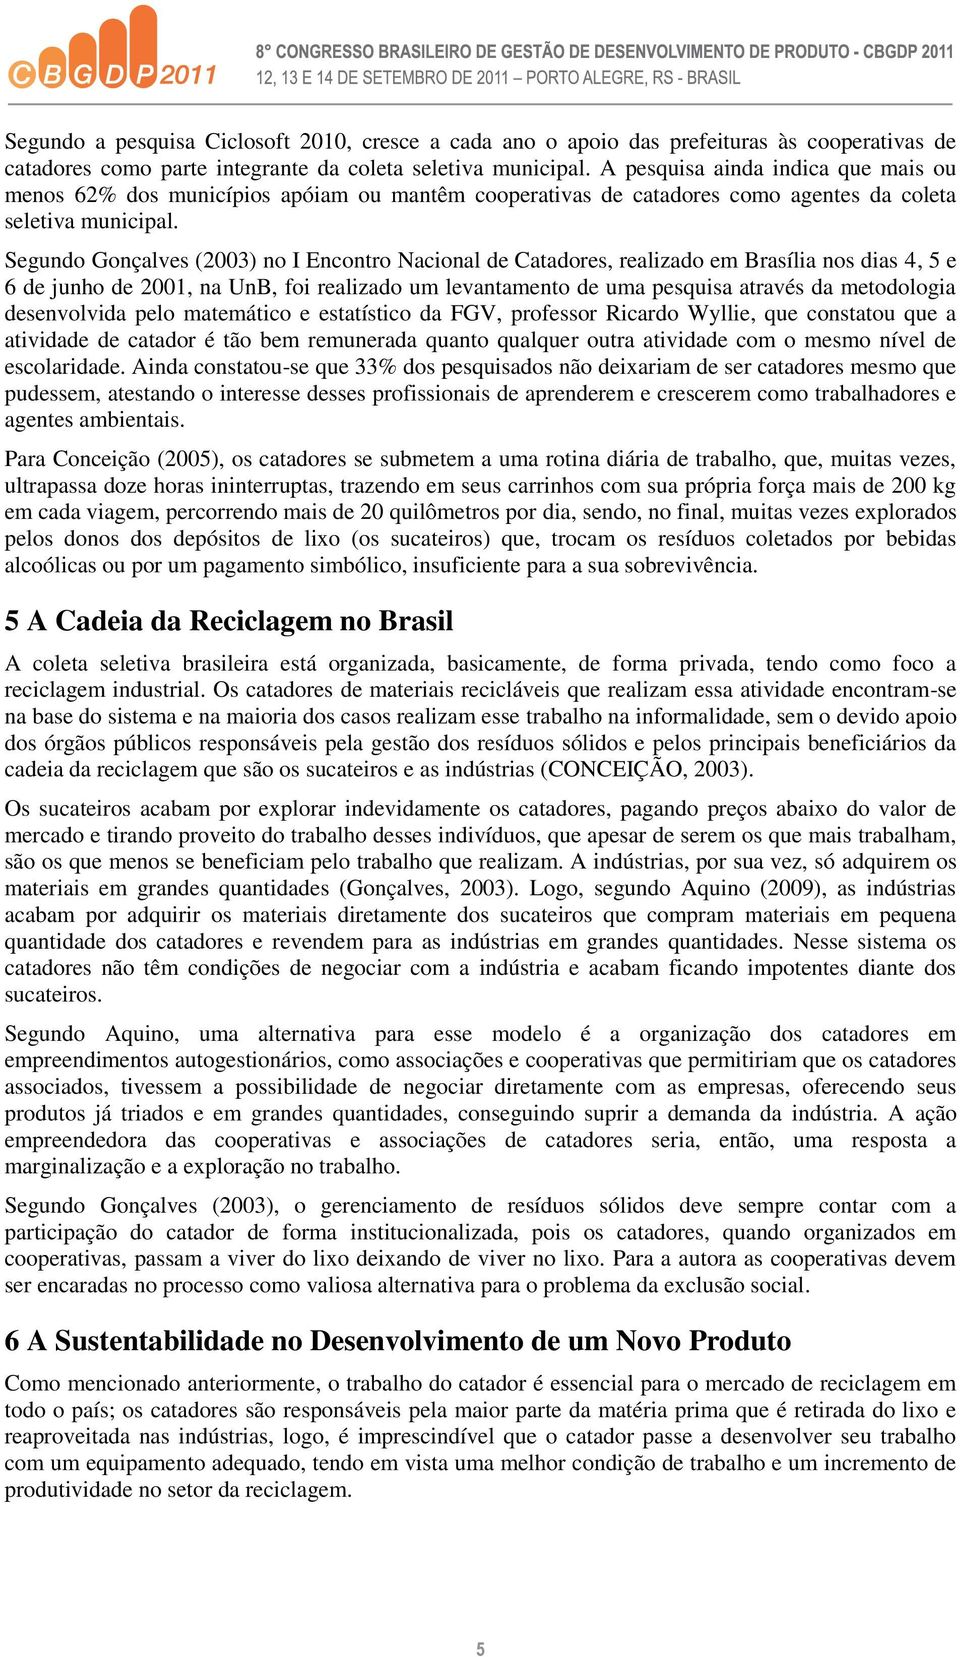 Segundo Gonçalves (2003) no I Encontro Nacional de Catadores, realizado em Brasília nos dias 4, 5 e 6 de junho de 2001, na UnB, foi realizado um levantamento de uma pesquisa através da metodologia